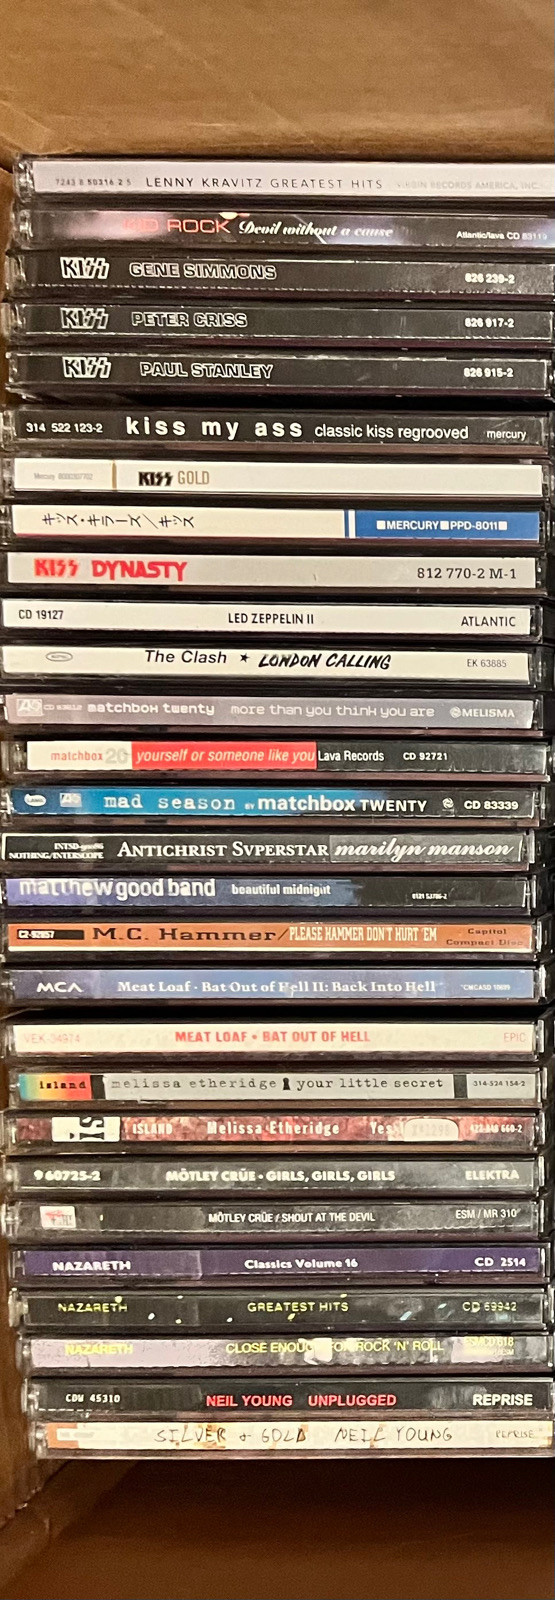 80s Rock CDs (177 CDs) - $5 each in CDs, DVDs & Blu-ray in St. Albert - Image 4